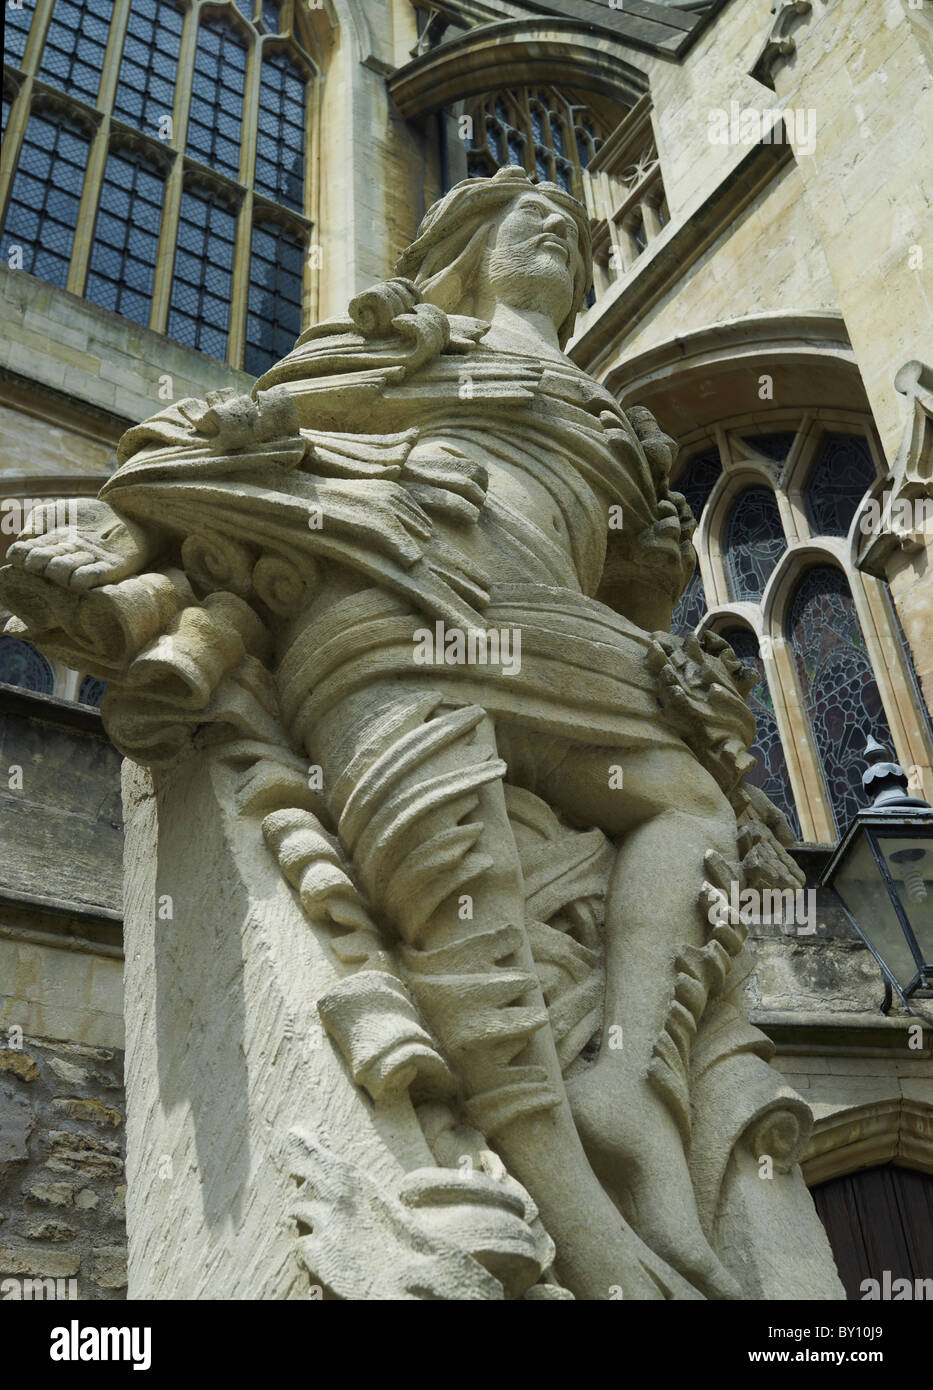 Abteikirche von Bath, Somerset, Statue des auferstandenen Christus, 2000, von lokalen Bildhauer Laurence Tindall Stockfoto